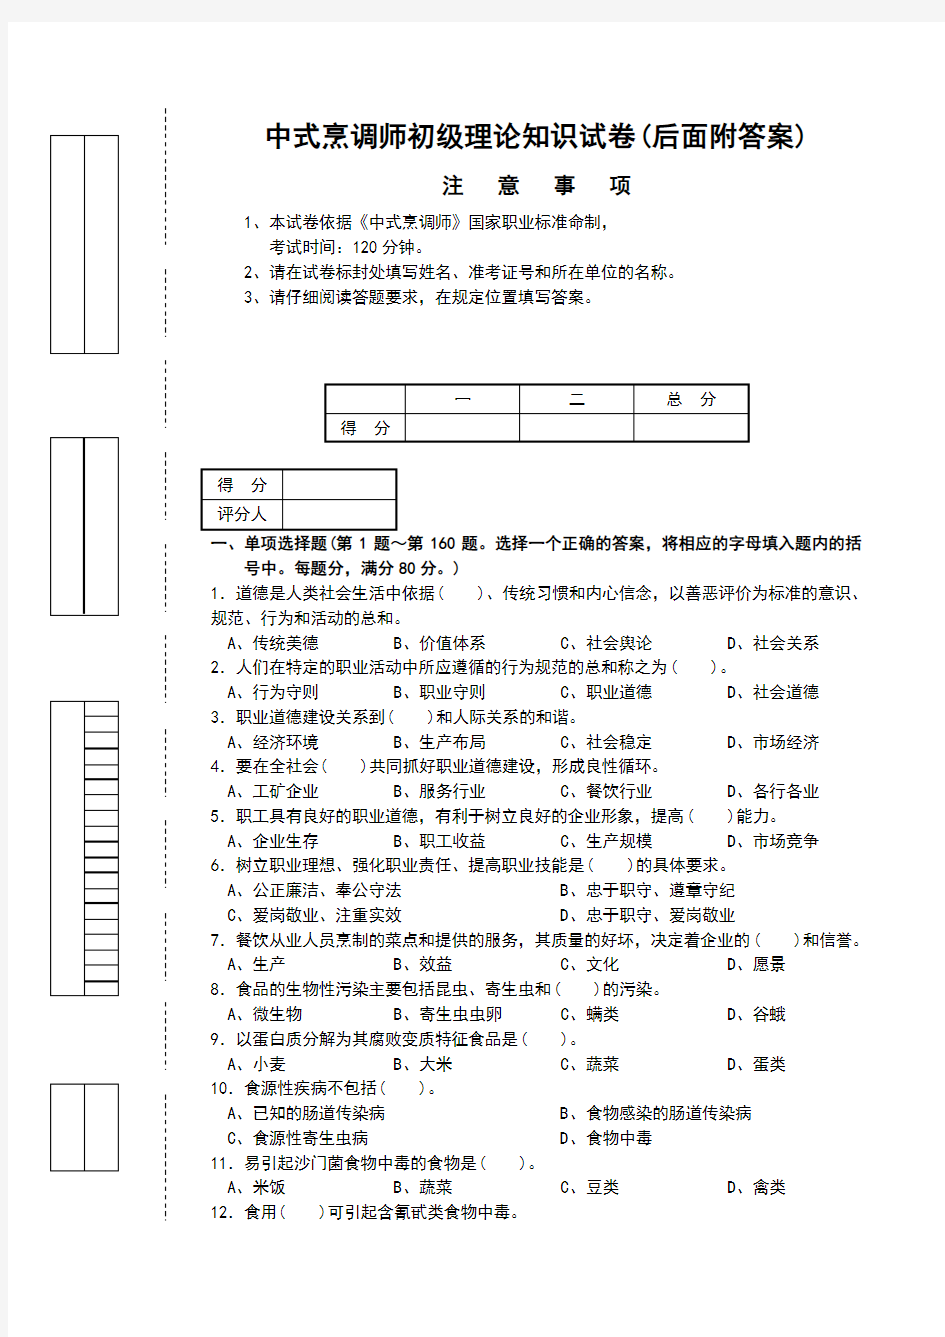 中式烹调师初级理论知识试卷1